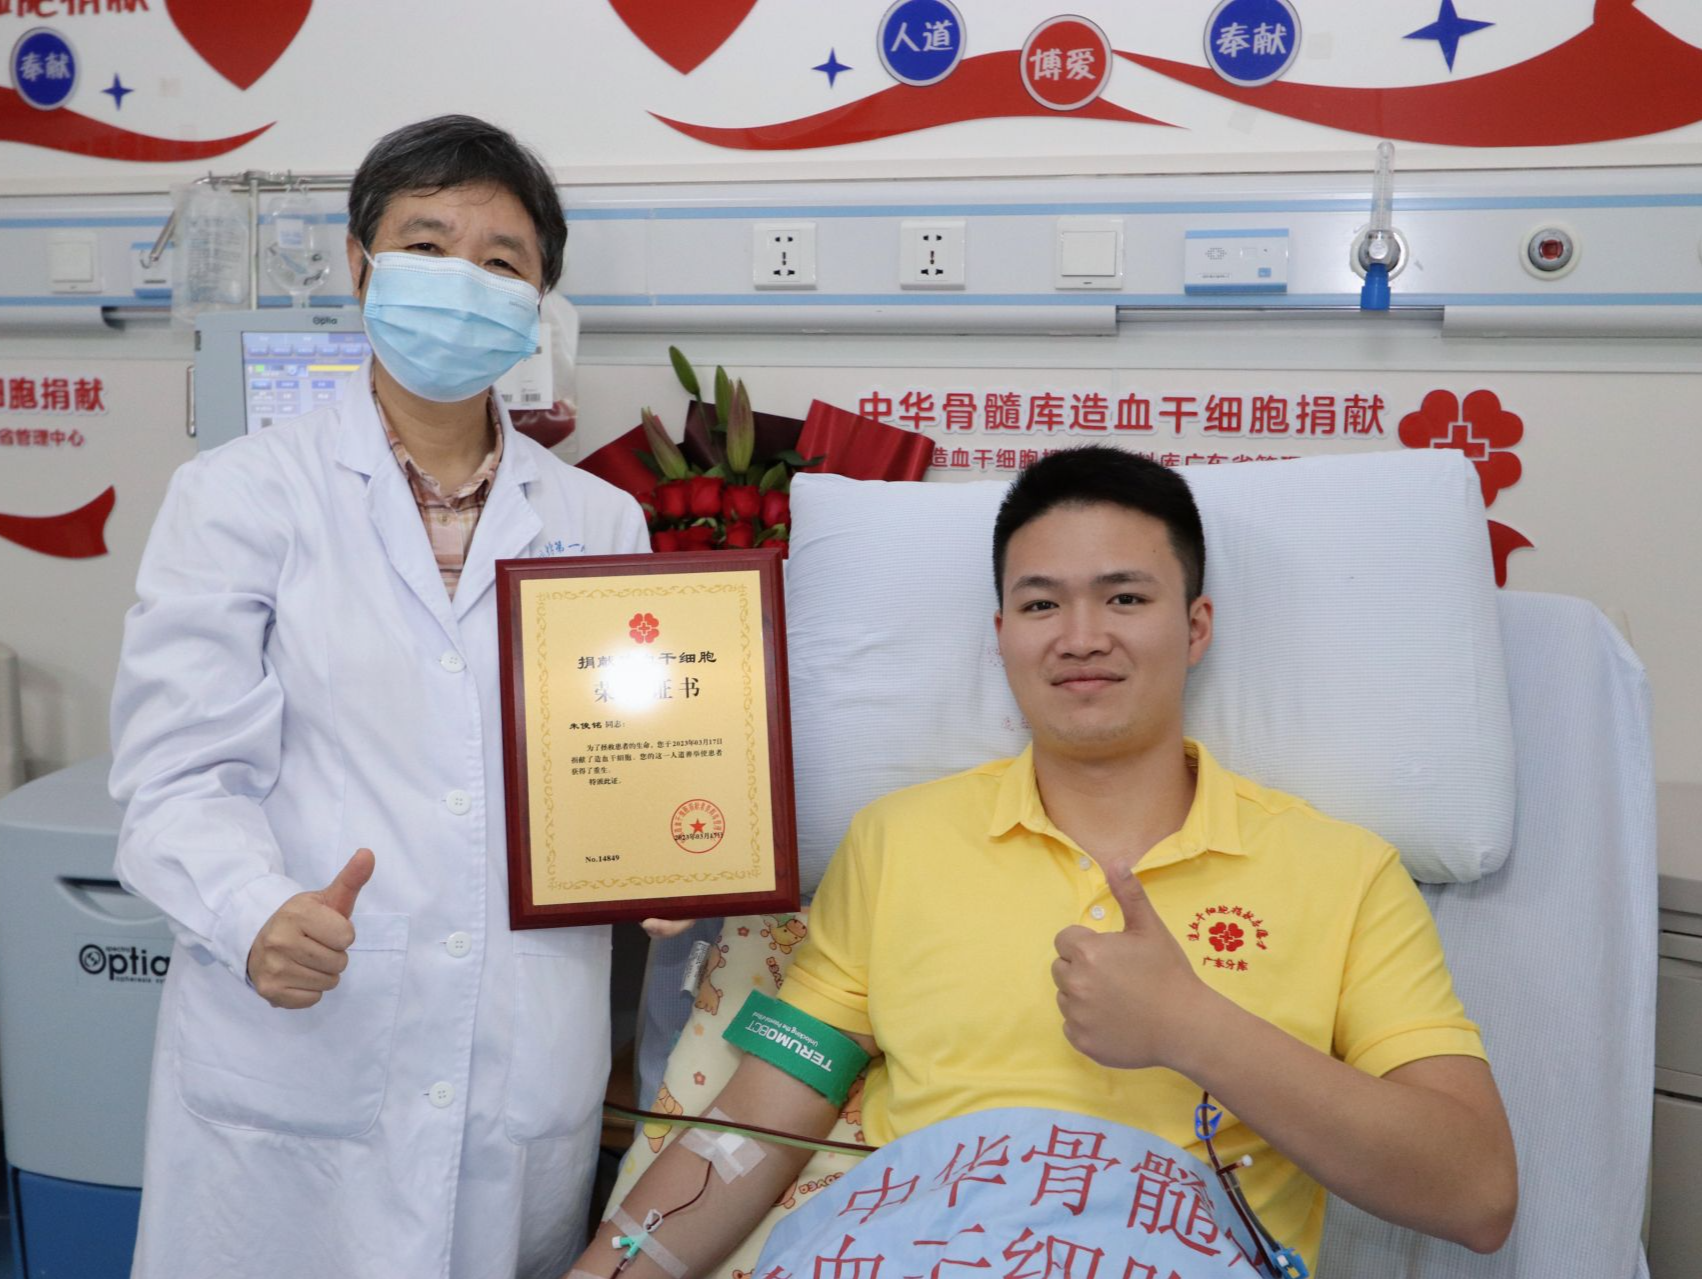 第595位捐献者！深圳一退役军人捐献造血干细胞，为患儿燃起希望